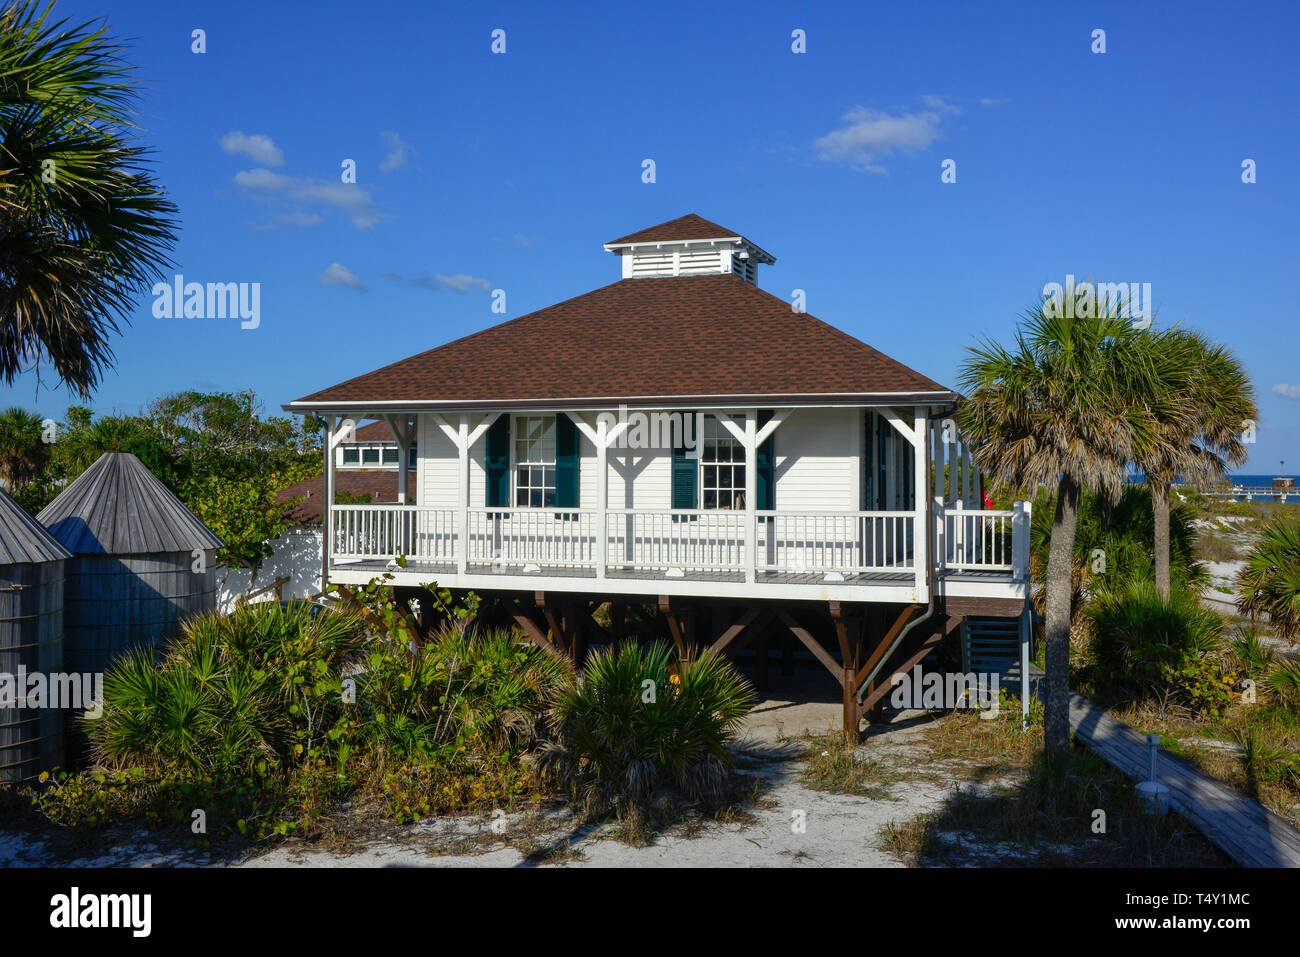 Ciel bleu et soleil Mettez le port historique Boca Grande Phare et musée, construit en 1890 à Boca Grande, FL sur Gasparilla Island Banque D'Images